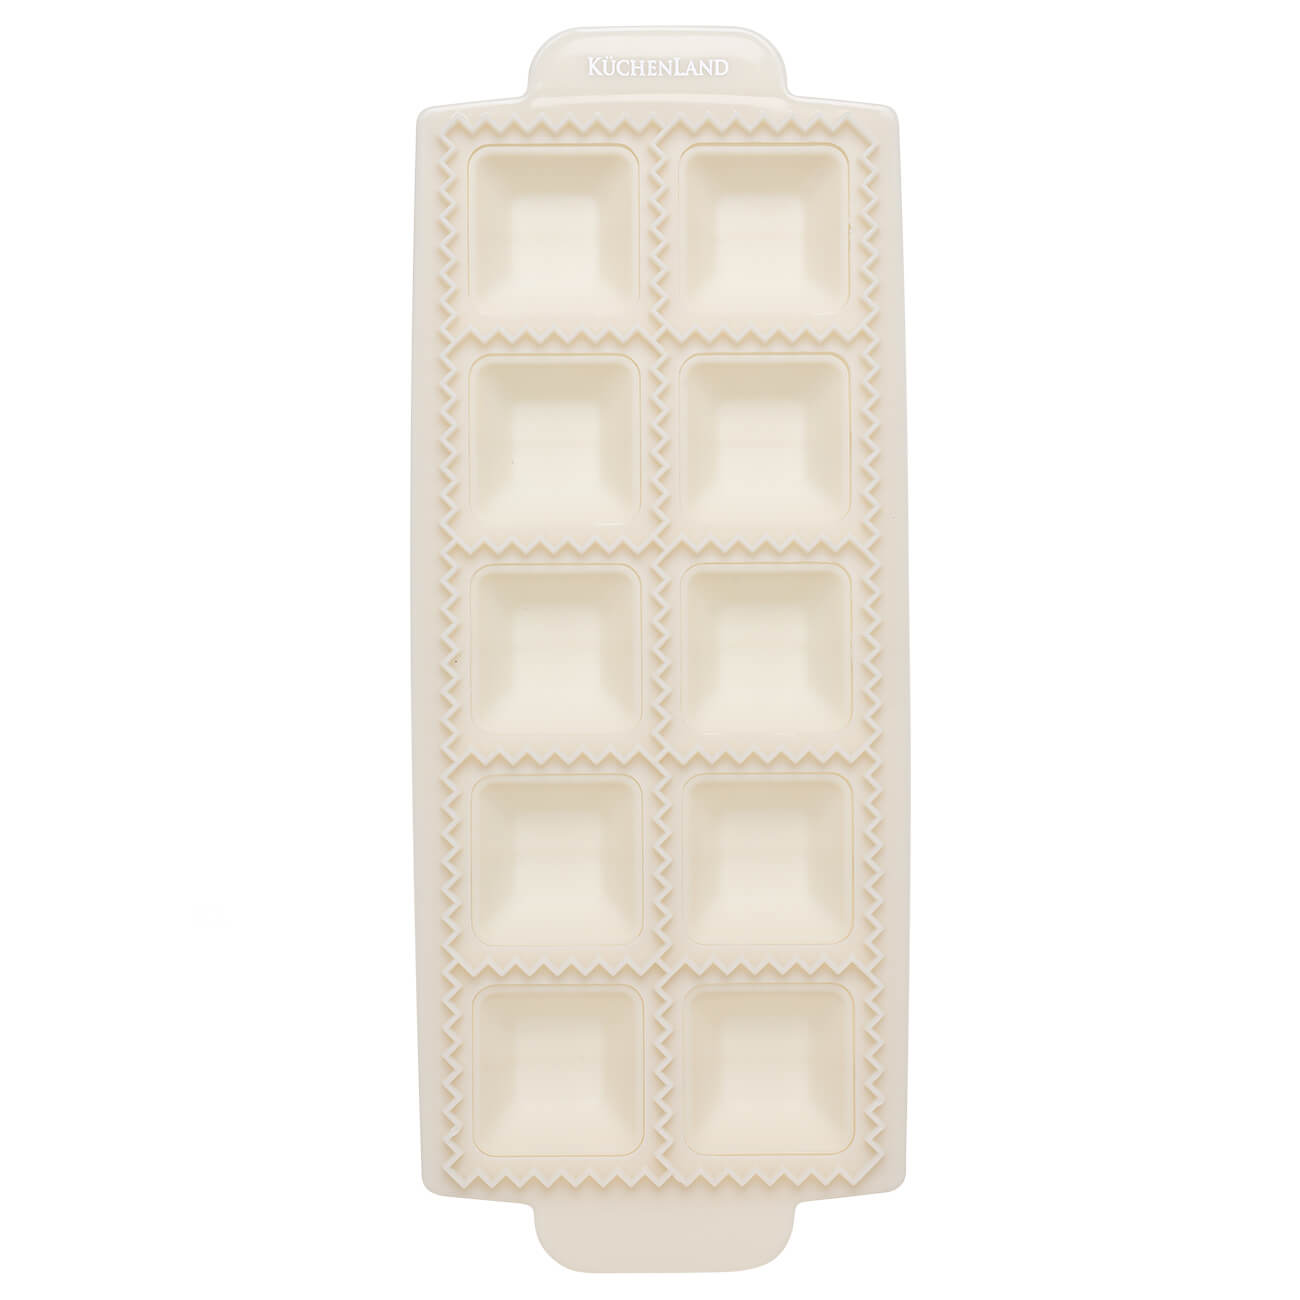 силиконовая форма для льда jordan judy ice mold honeycomb beige 19 ячеек cd033 Форма для лепки равиоли, 26х11 см, 10 ячеек, прямоугольная, пластик, молочная, Bakery